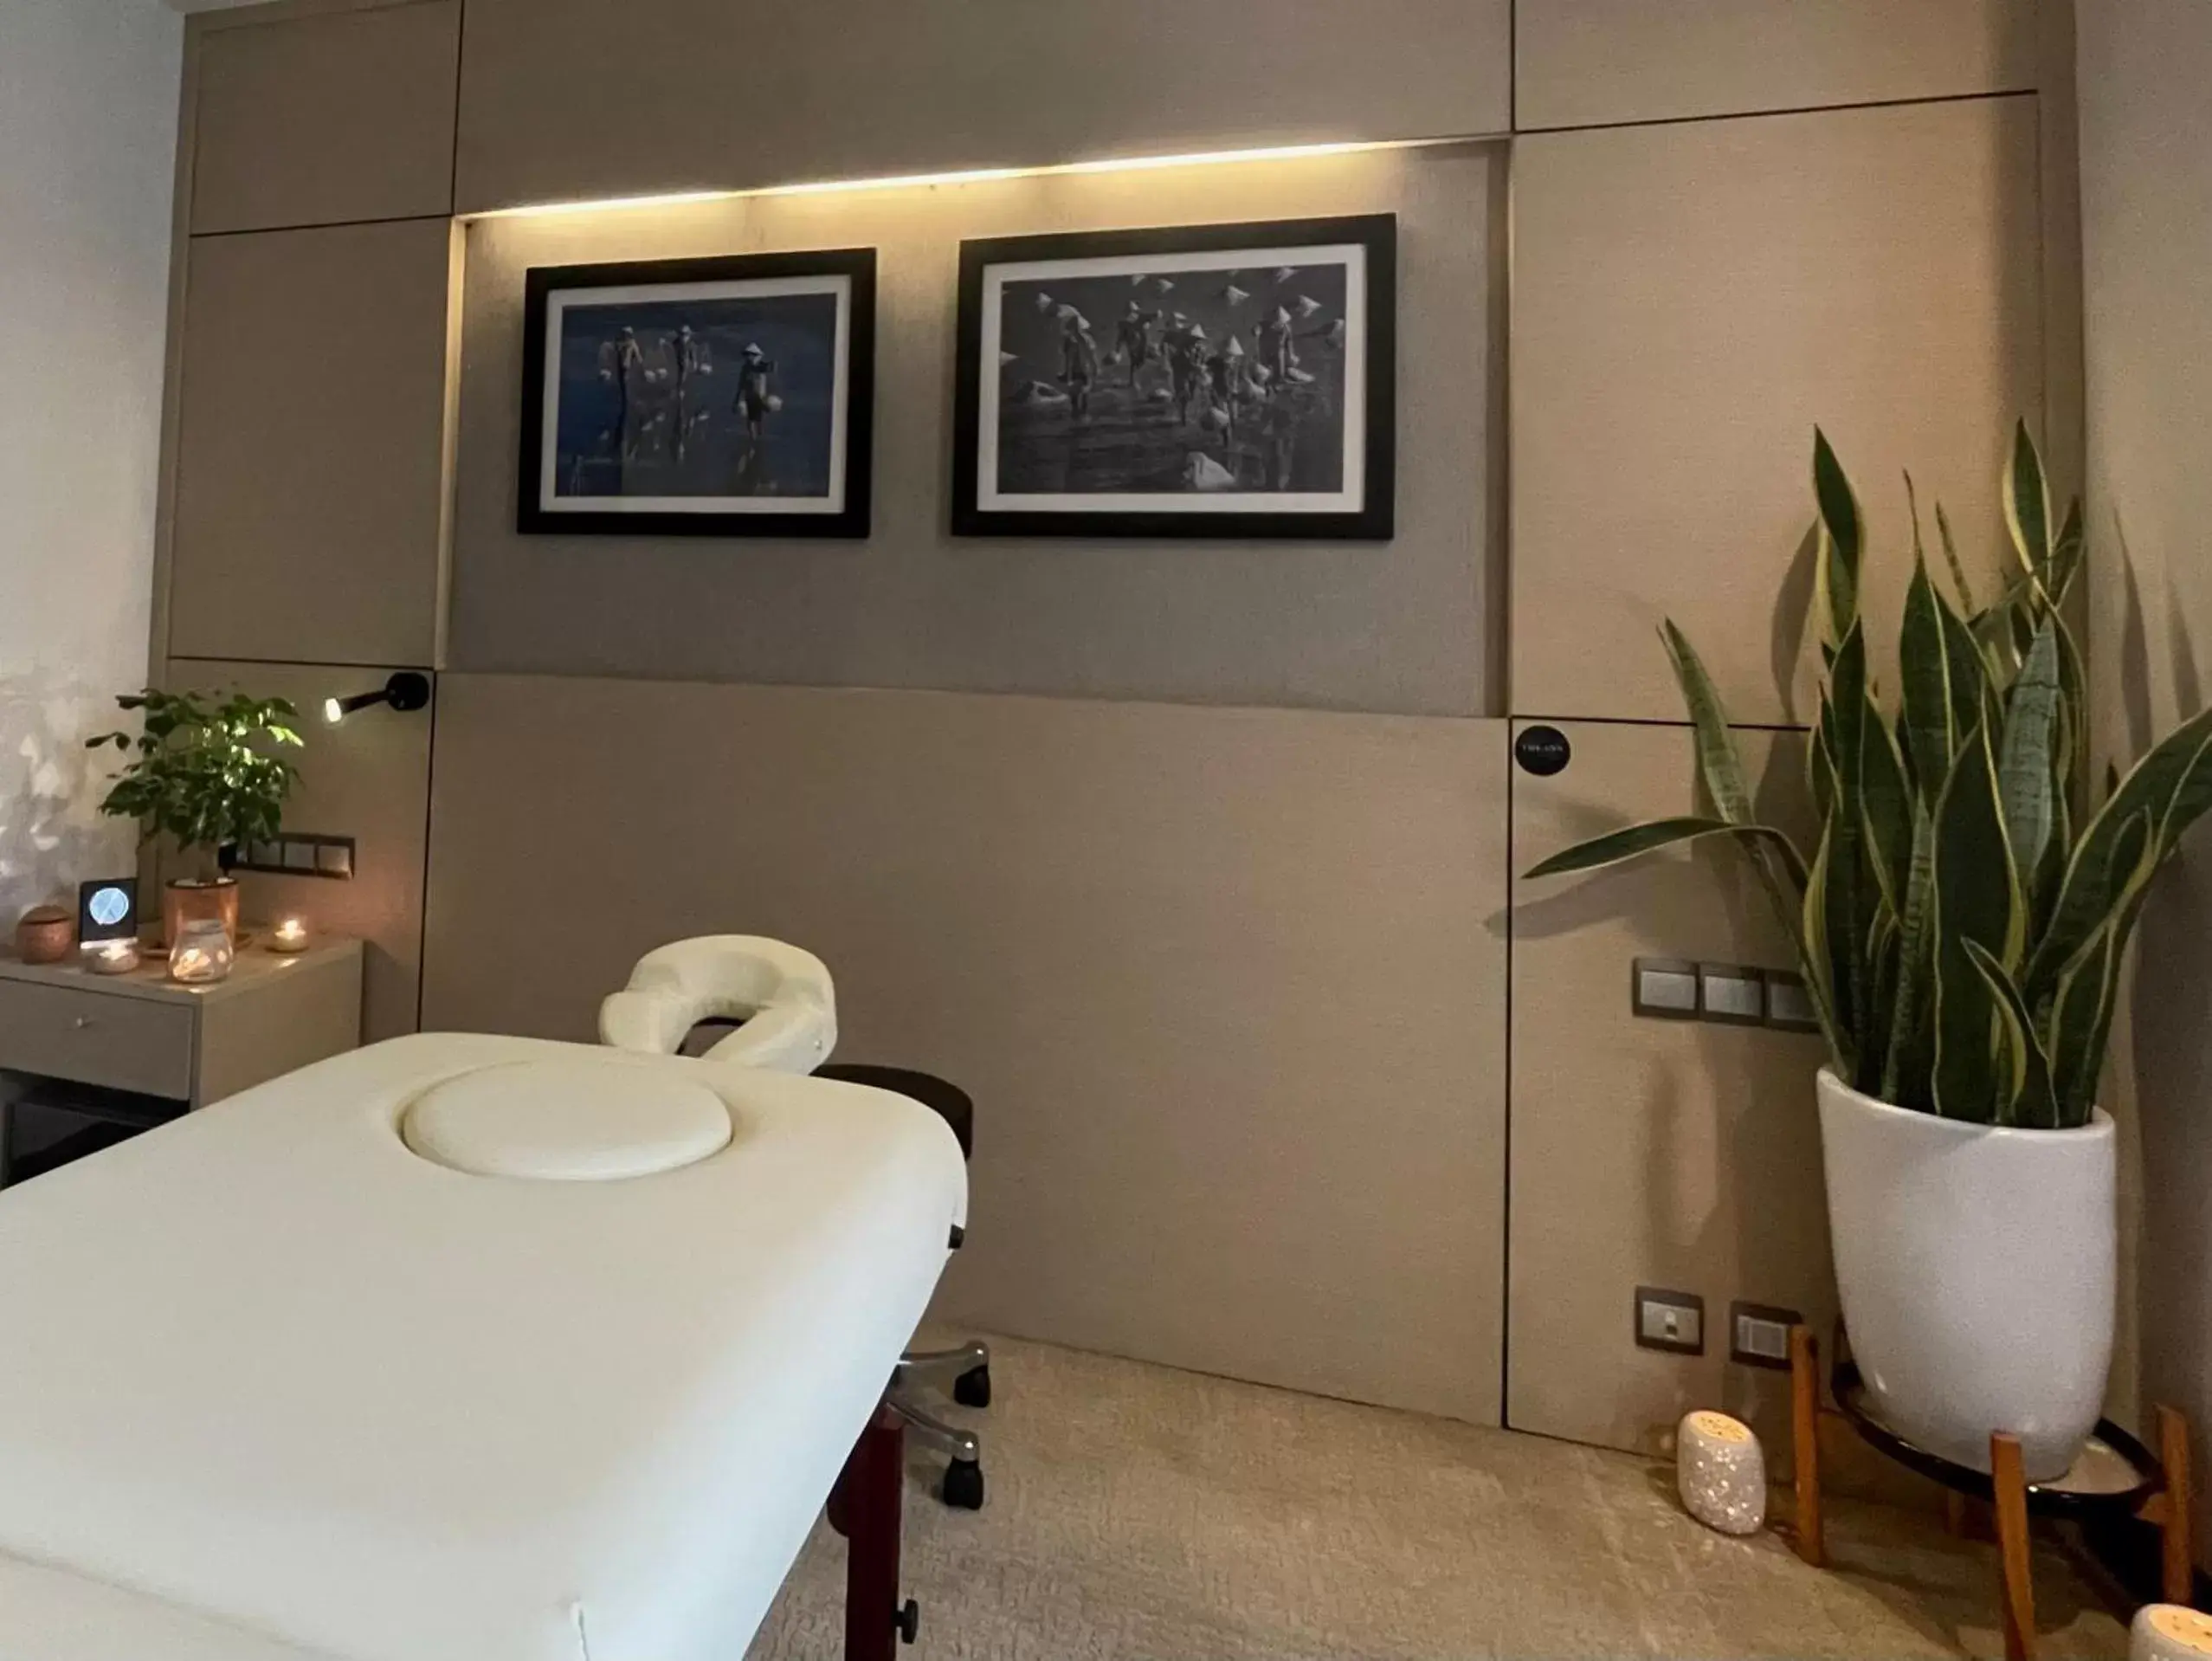 Spa and wellness centre/facilities, Bathroom in The Ann Hanoi Hotel